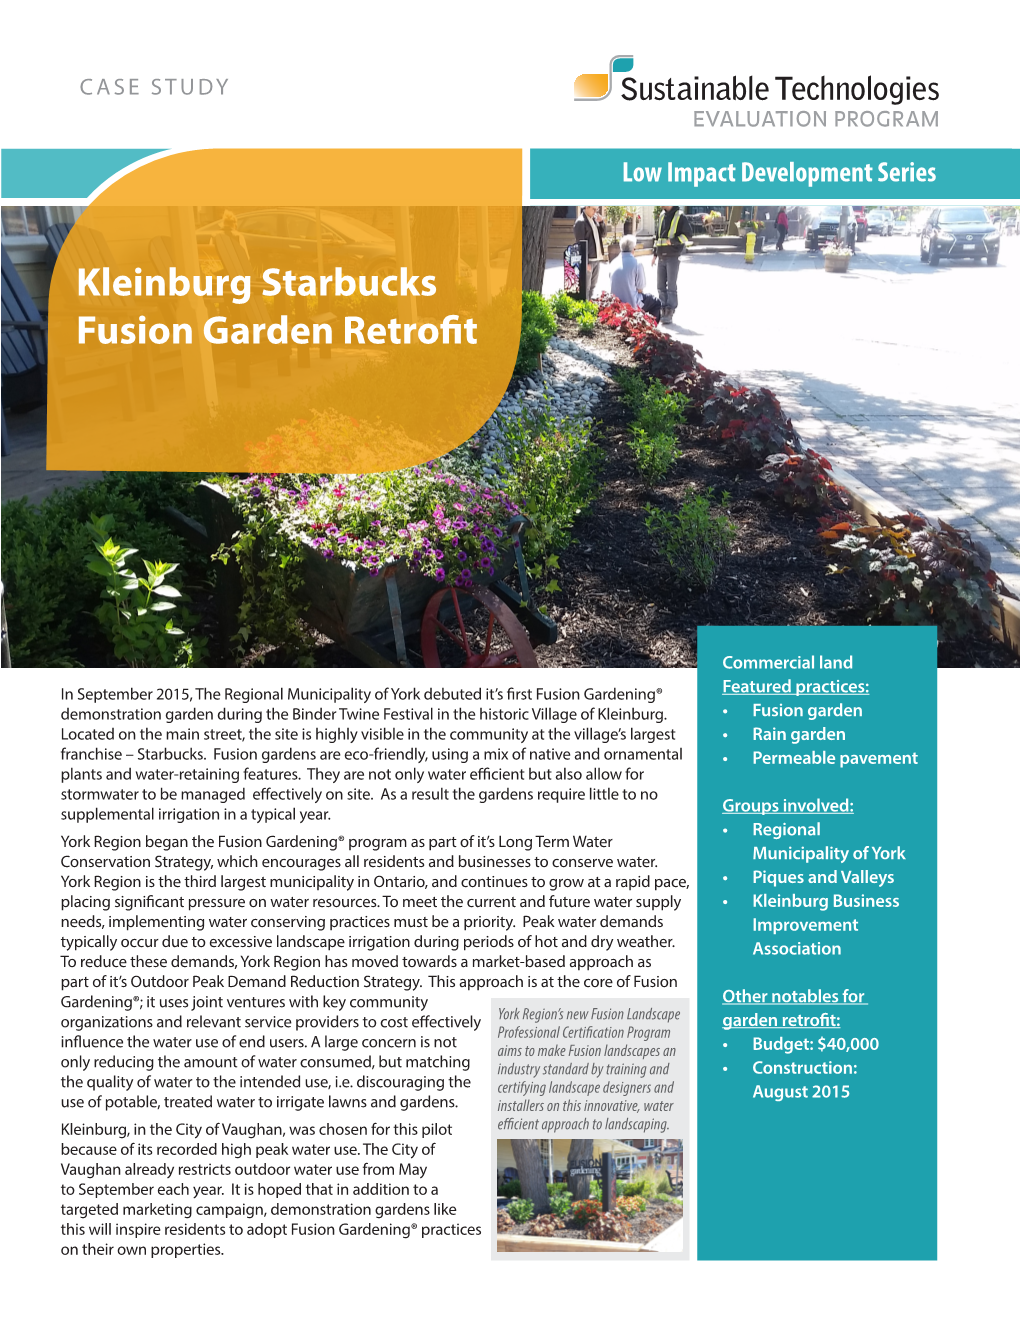 Kleinburg Starbucks Fusion Garden Retrofit